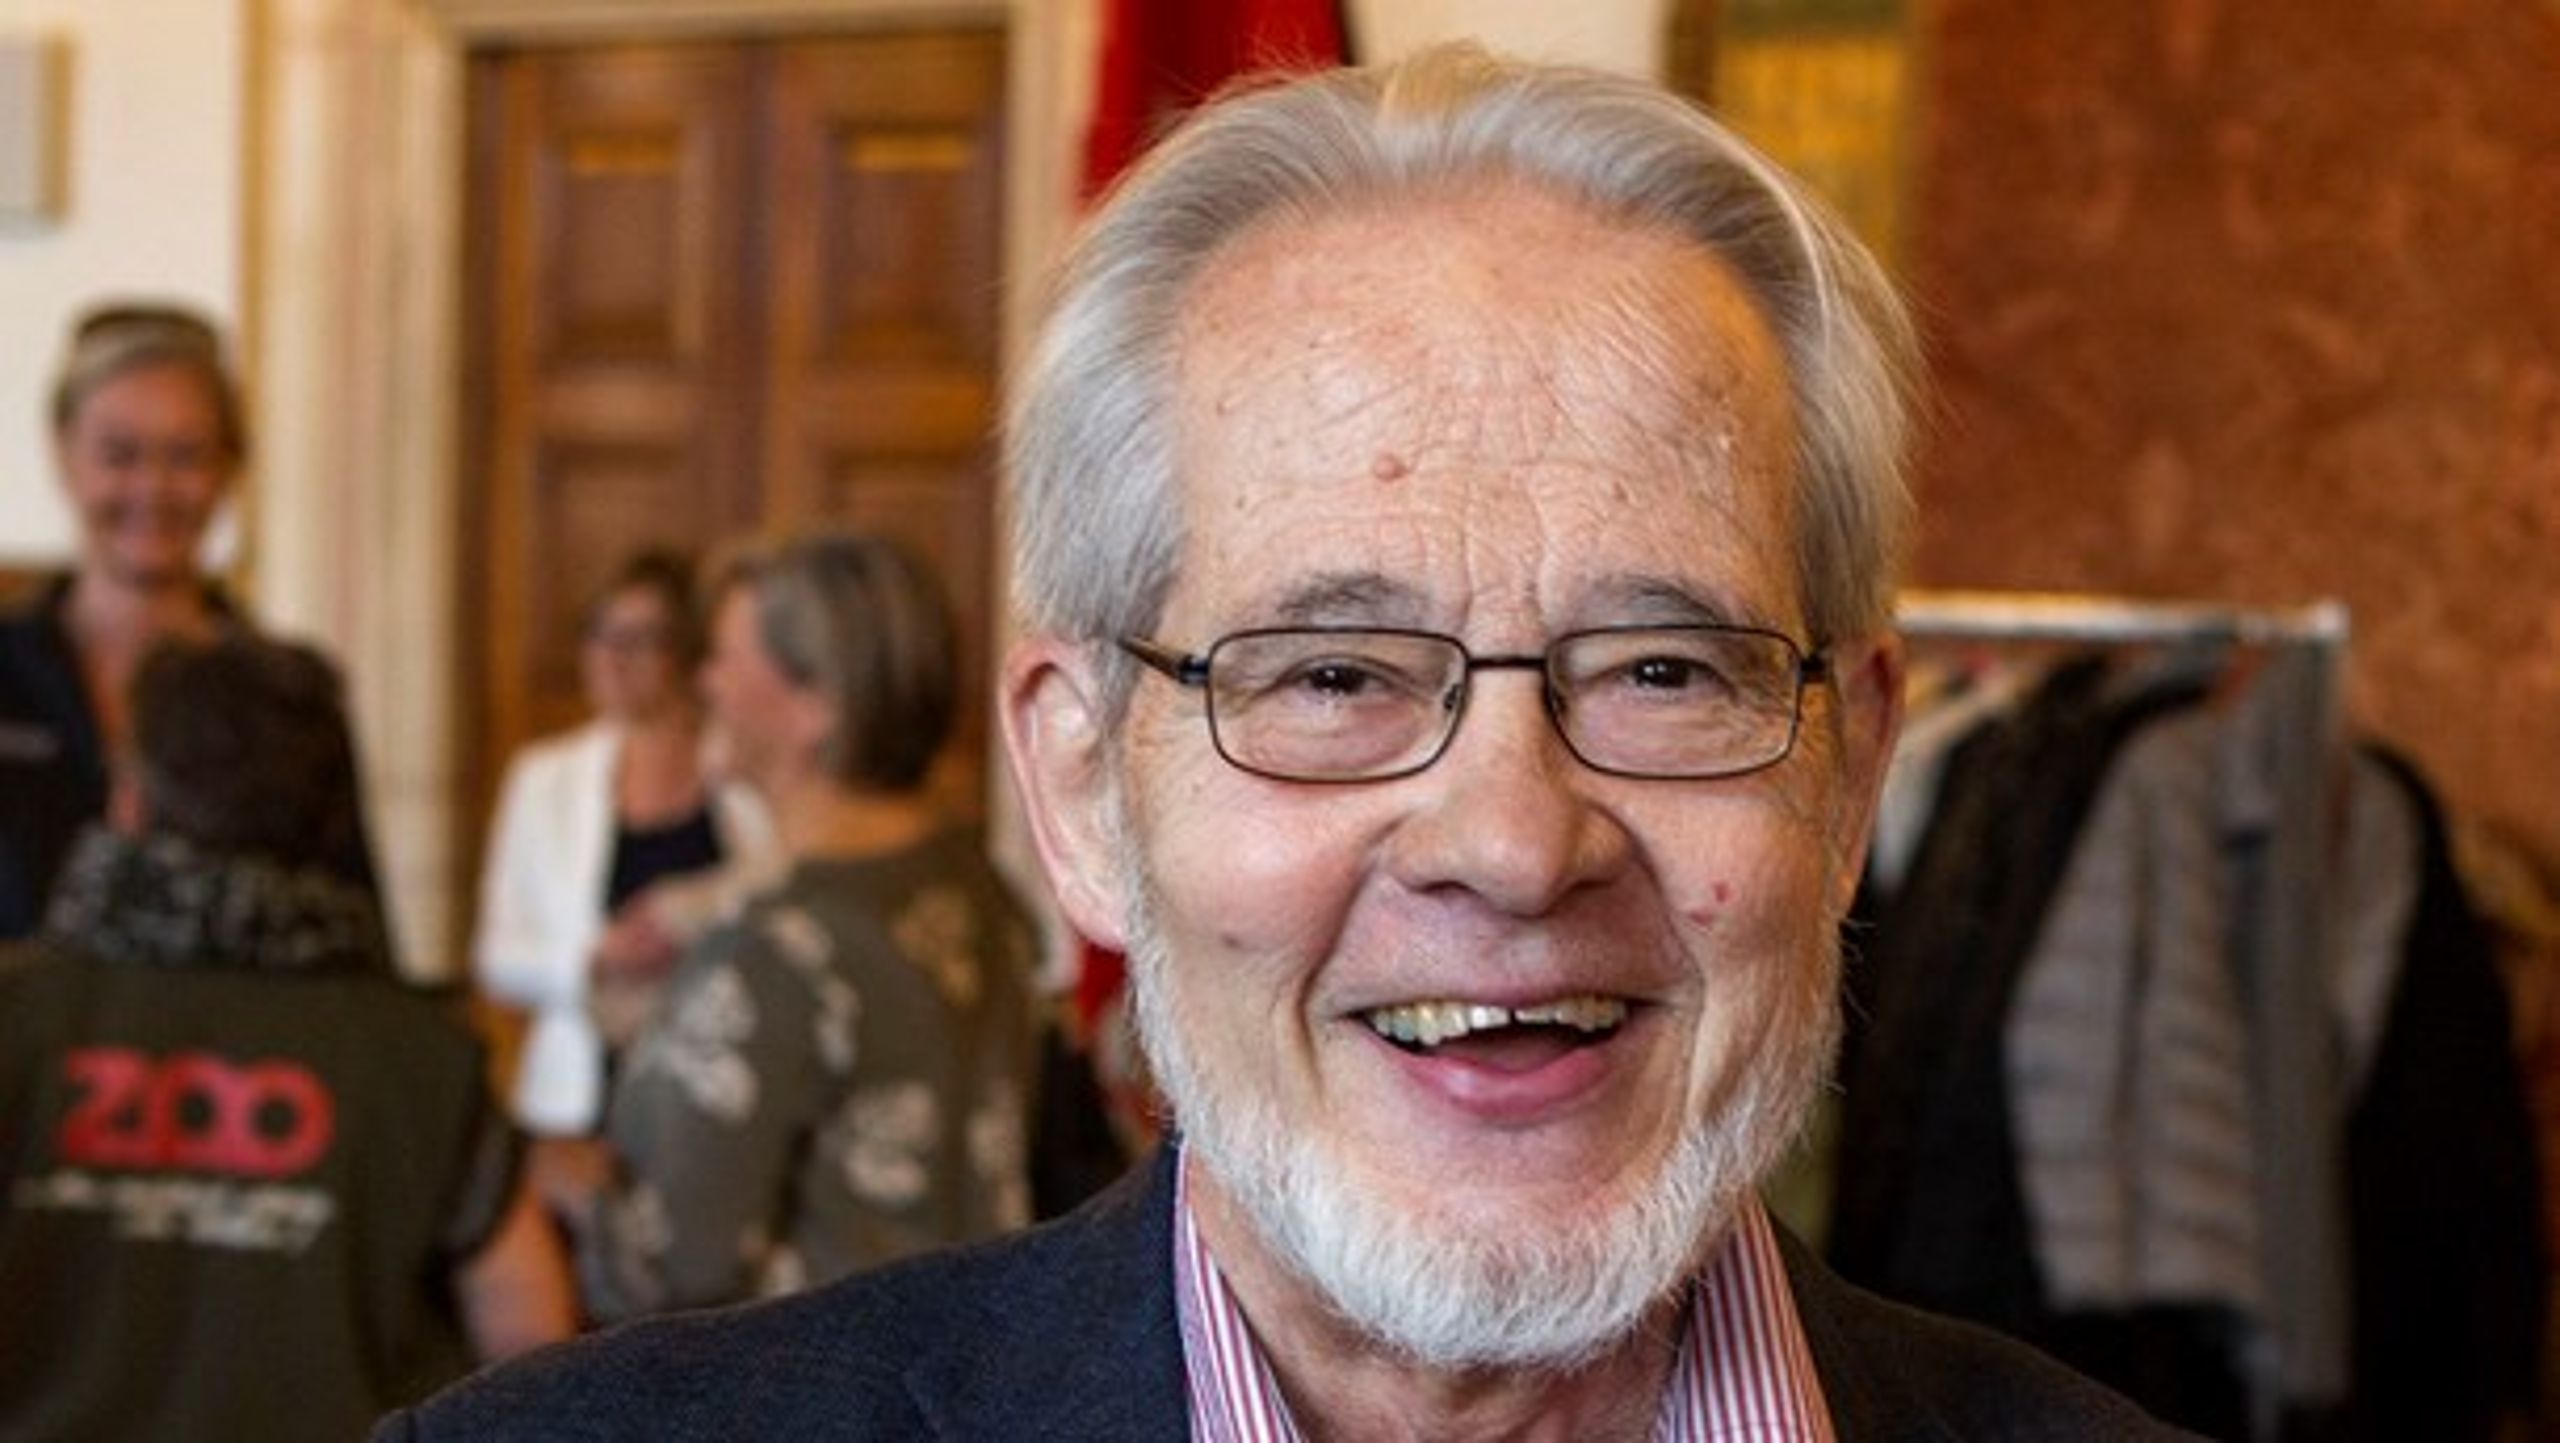 Socialdemokrat, politiker og eks-borgmester Pelle Jarmer er død efter et langt liv. Han blev 81 og endte sit liv i Brønshøj, hvor han også voksede op.&nbsp;&nbsp;